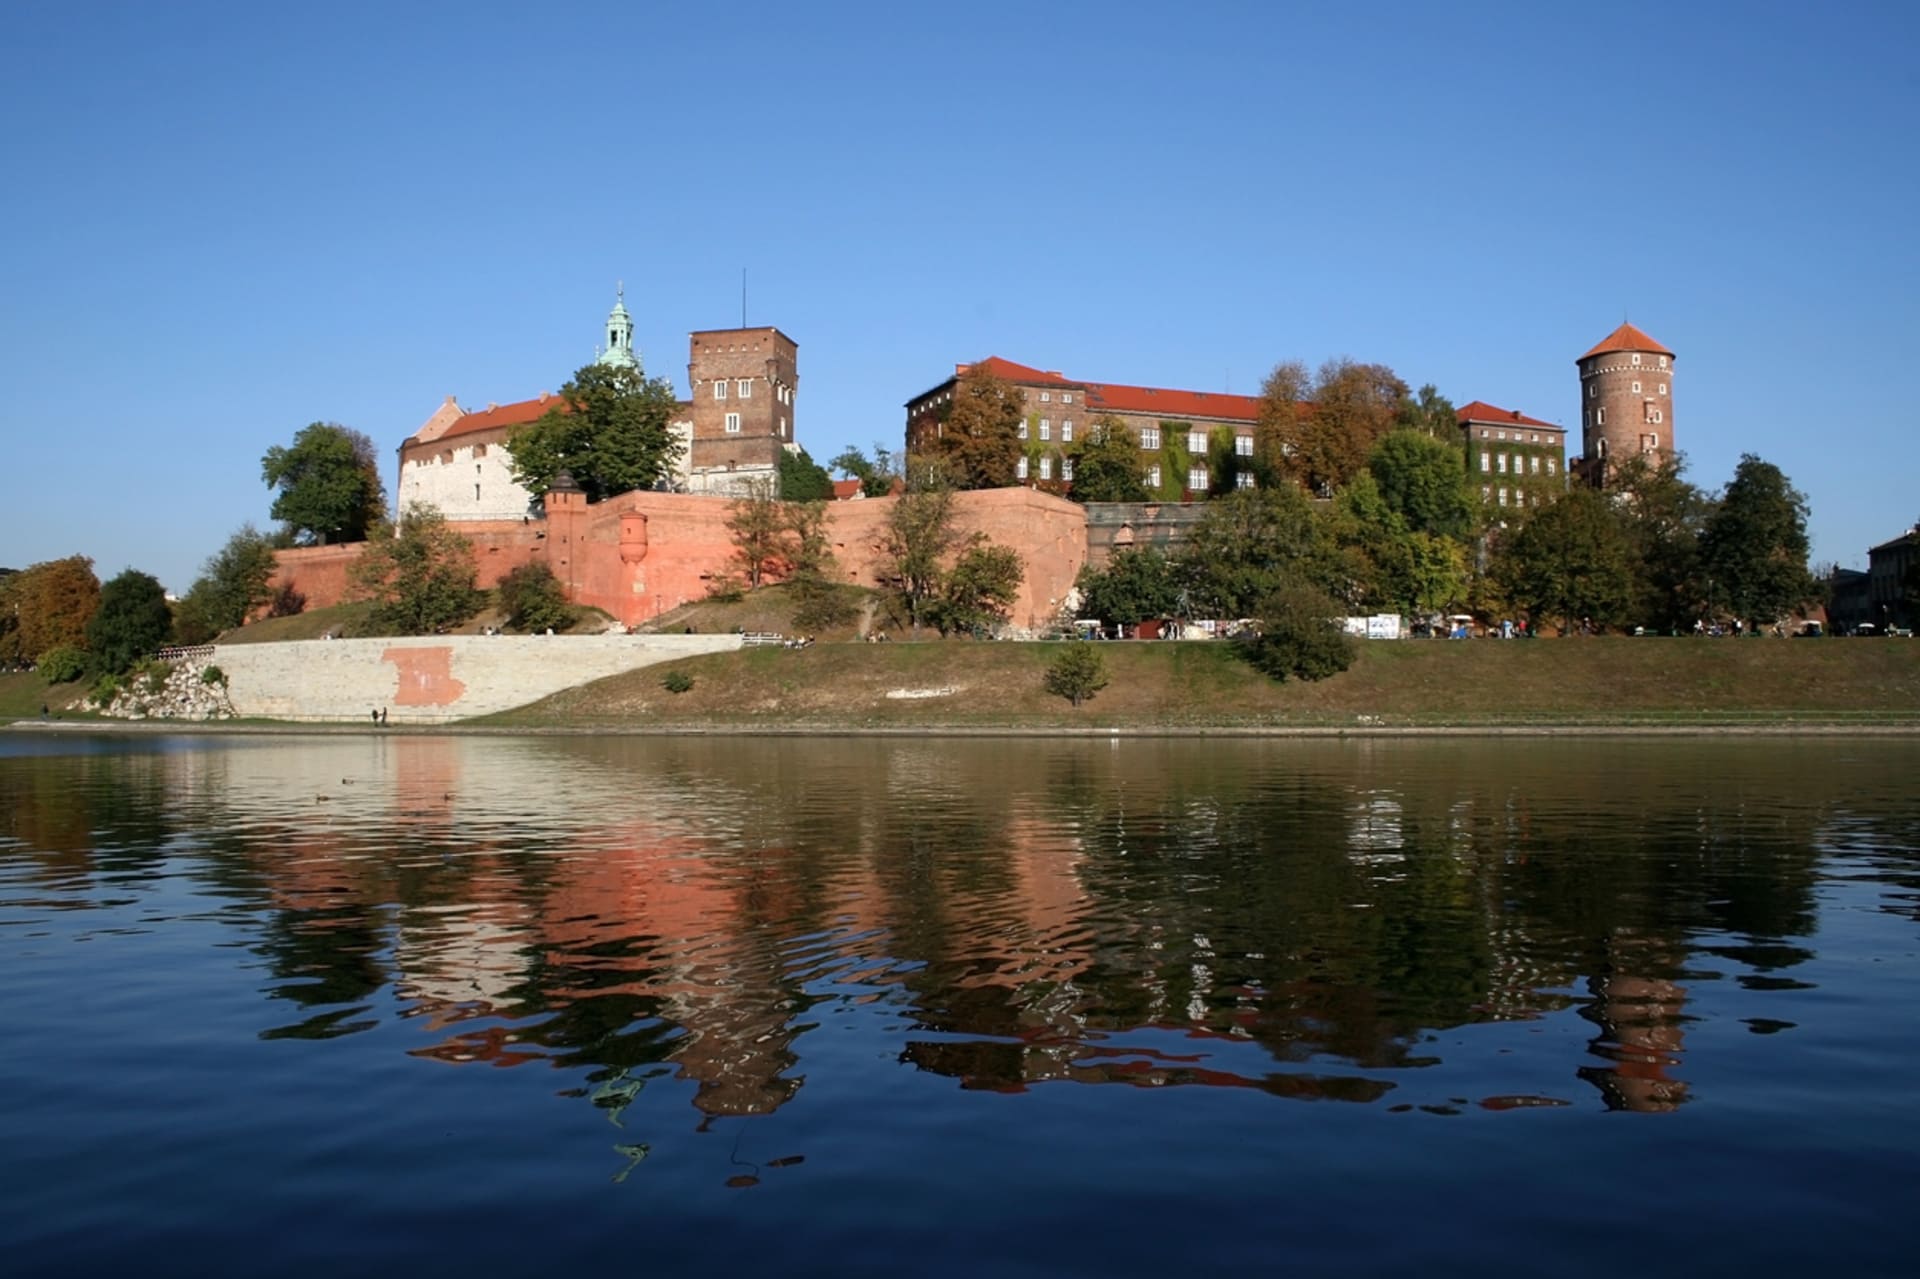 Krakov, královský hrad Wawel je jedním z nejvýznamnějších kulturních a historických památek v Polsku